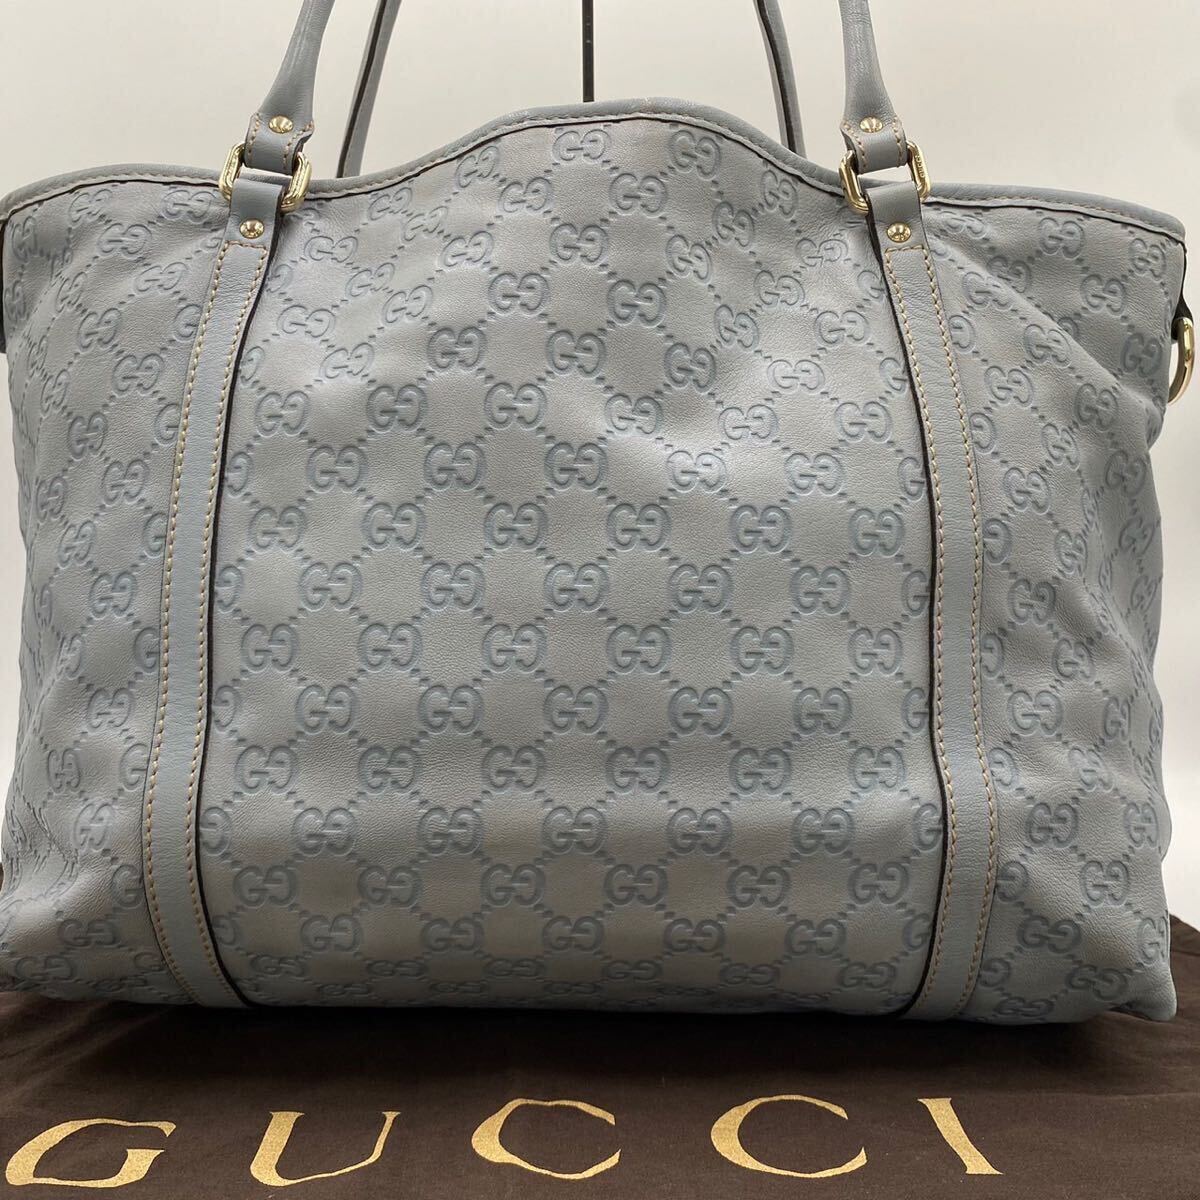 1 иен [ редкий цвет ]GUCCI Gucci большая сумка портфель натуральная кожа simaA4 возможно GG рисунок бизнес мужской плечо .. ходить на работу посещение школы документы оттенок голубого 